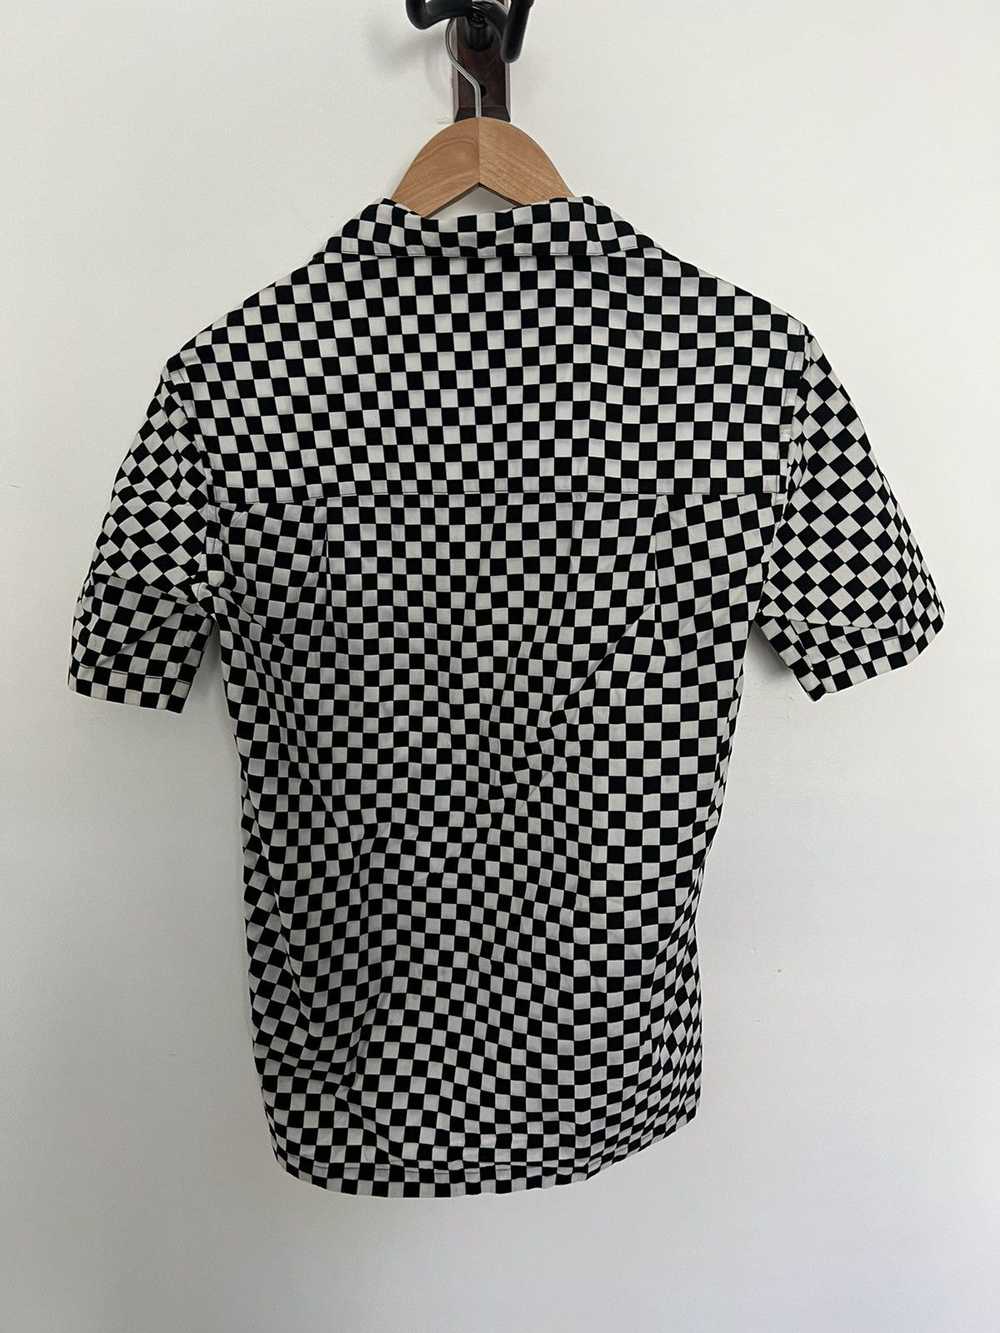 Saint Laurent Paris Checkered shirt - image 7